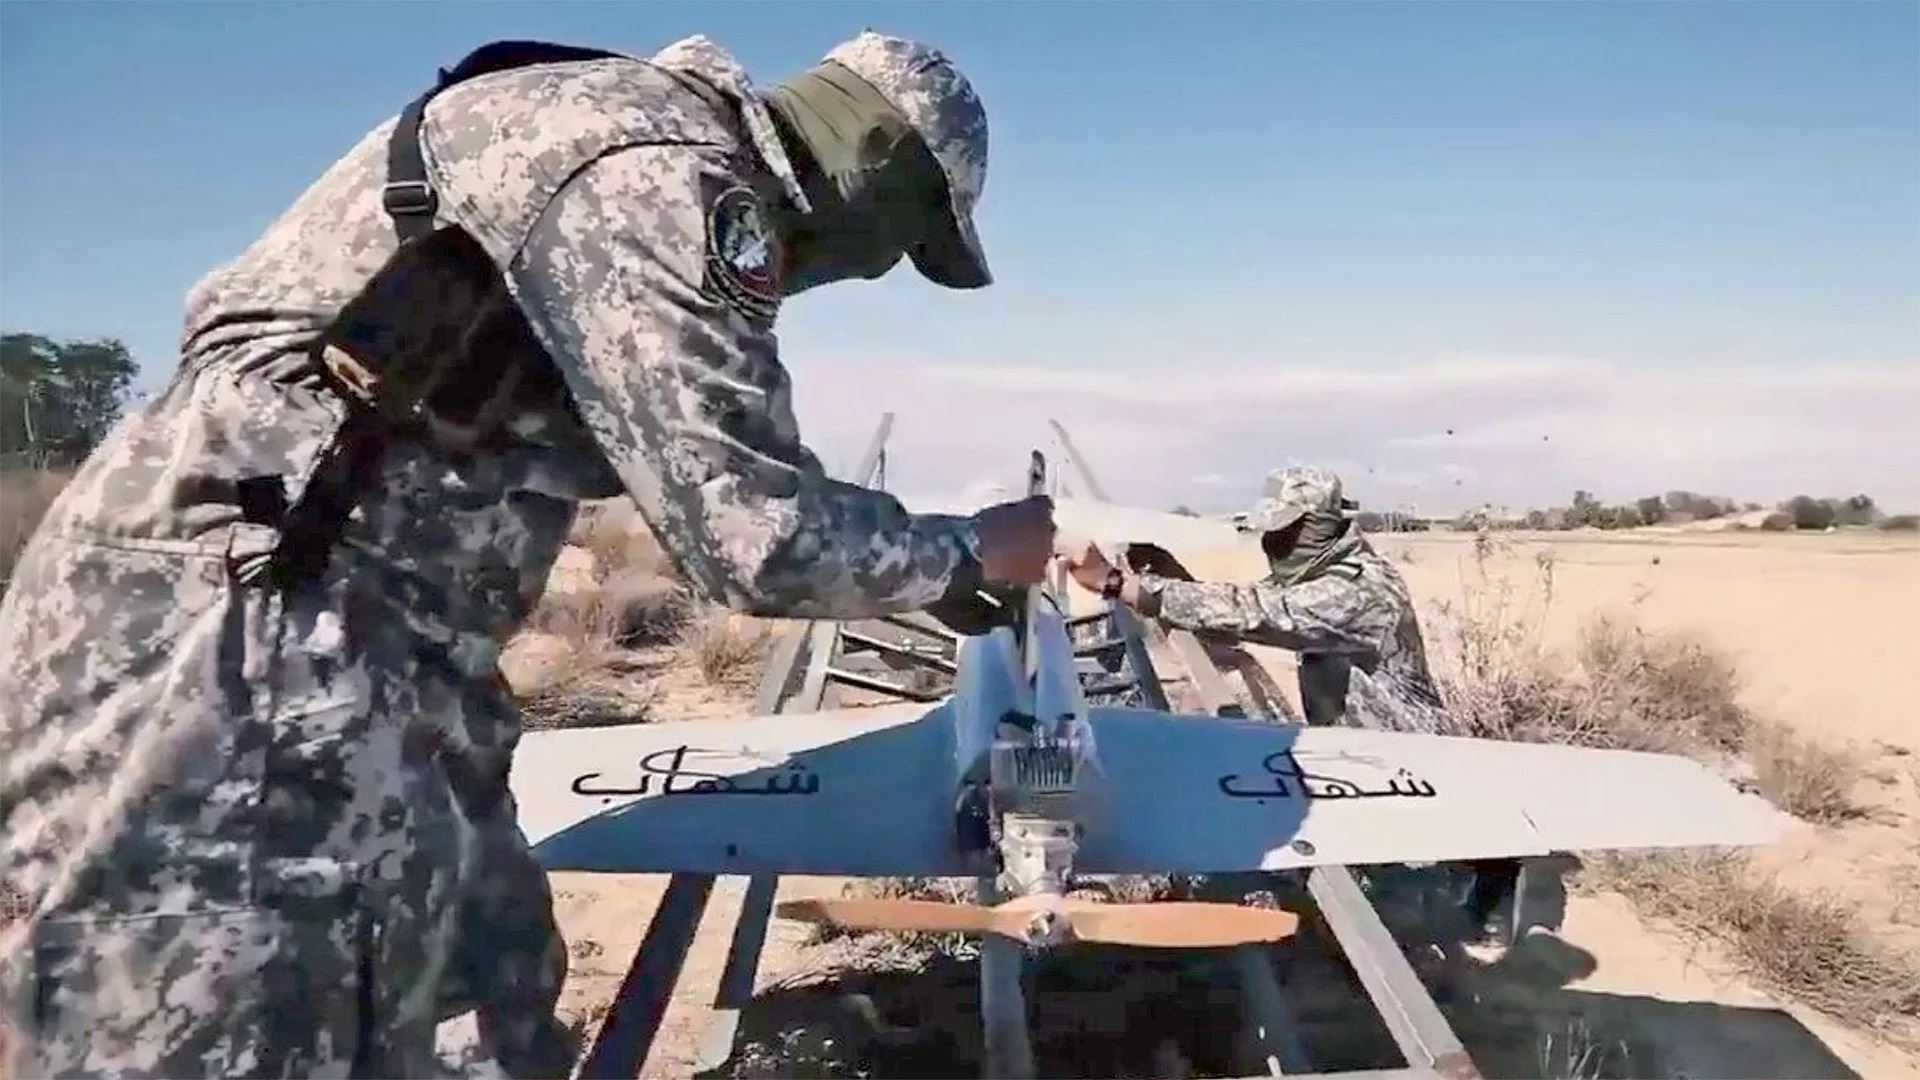 scontri coi mini-bombardieri: così i droni hanno cambiato le regole del gioco